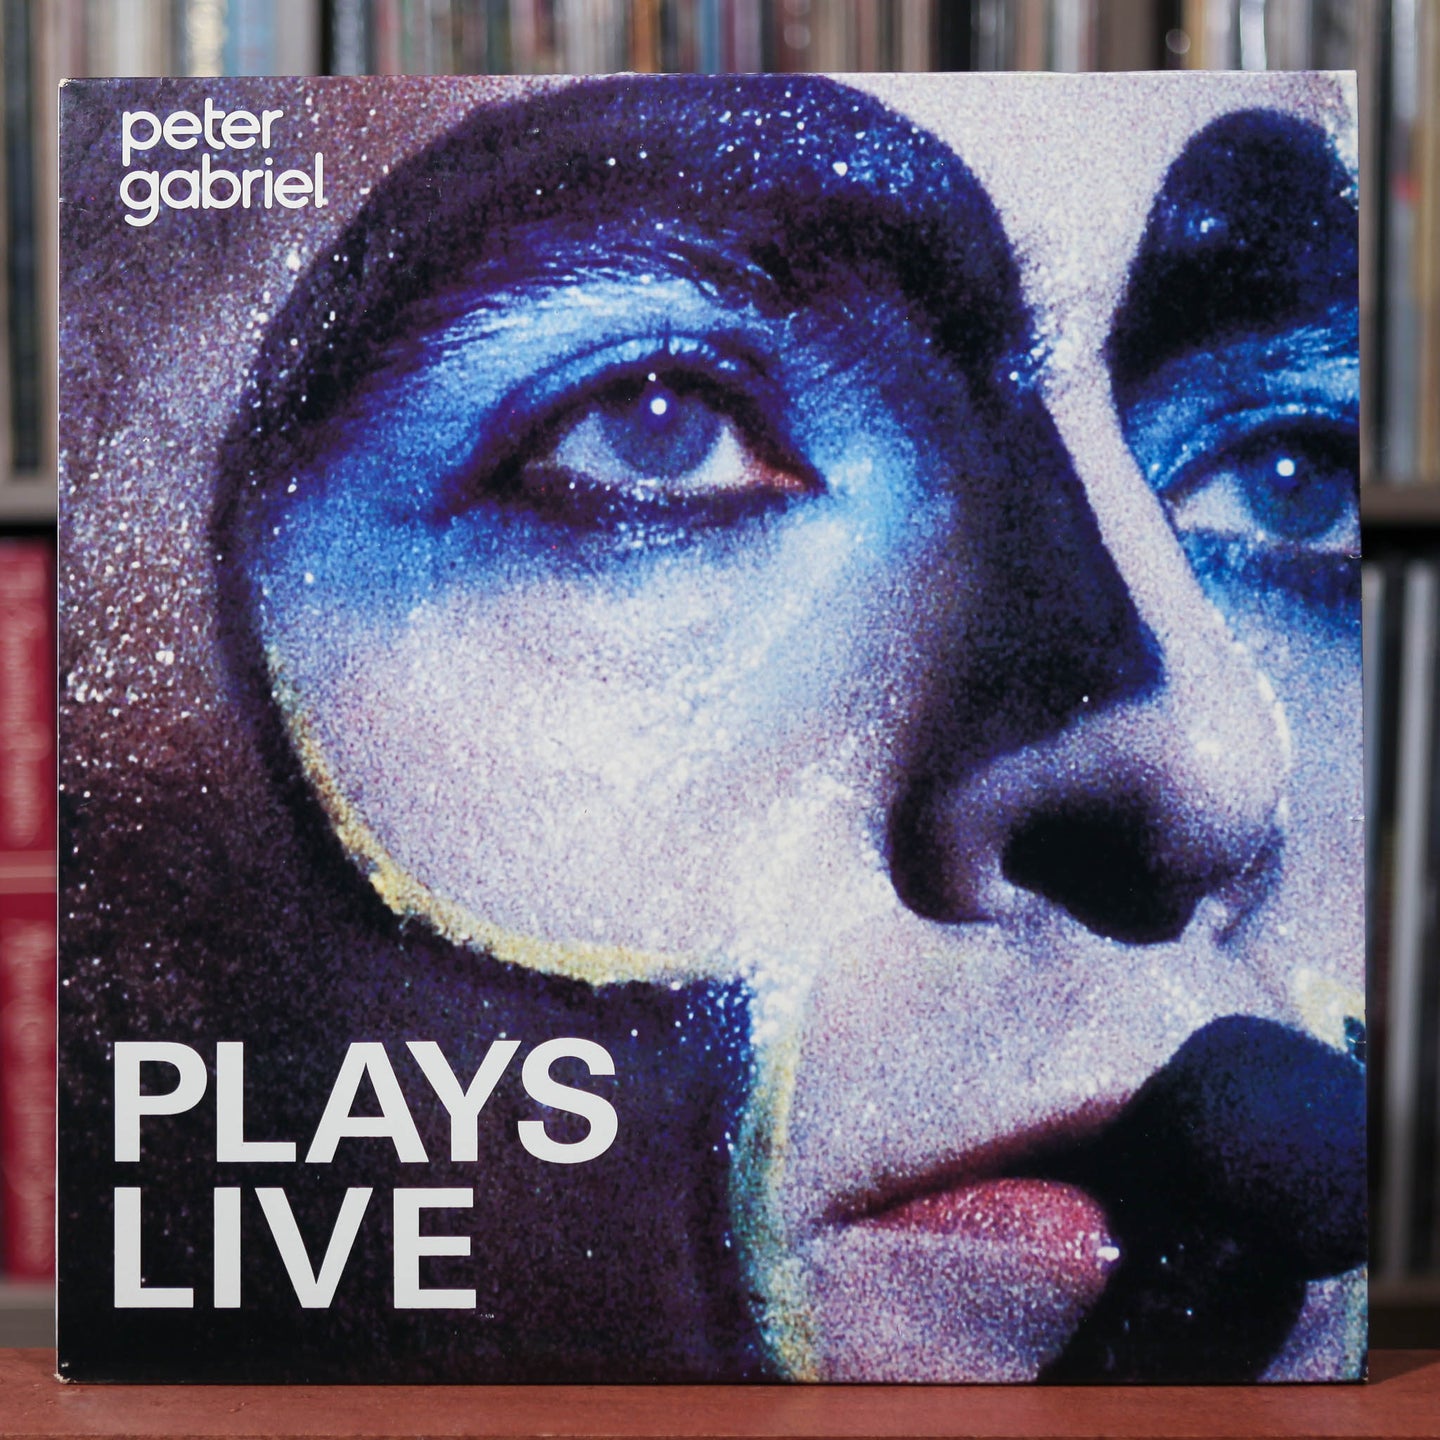 Peter Gabriel - Plays Live - 2LP - 1983 Geffen, EX/VG+